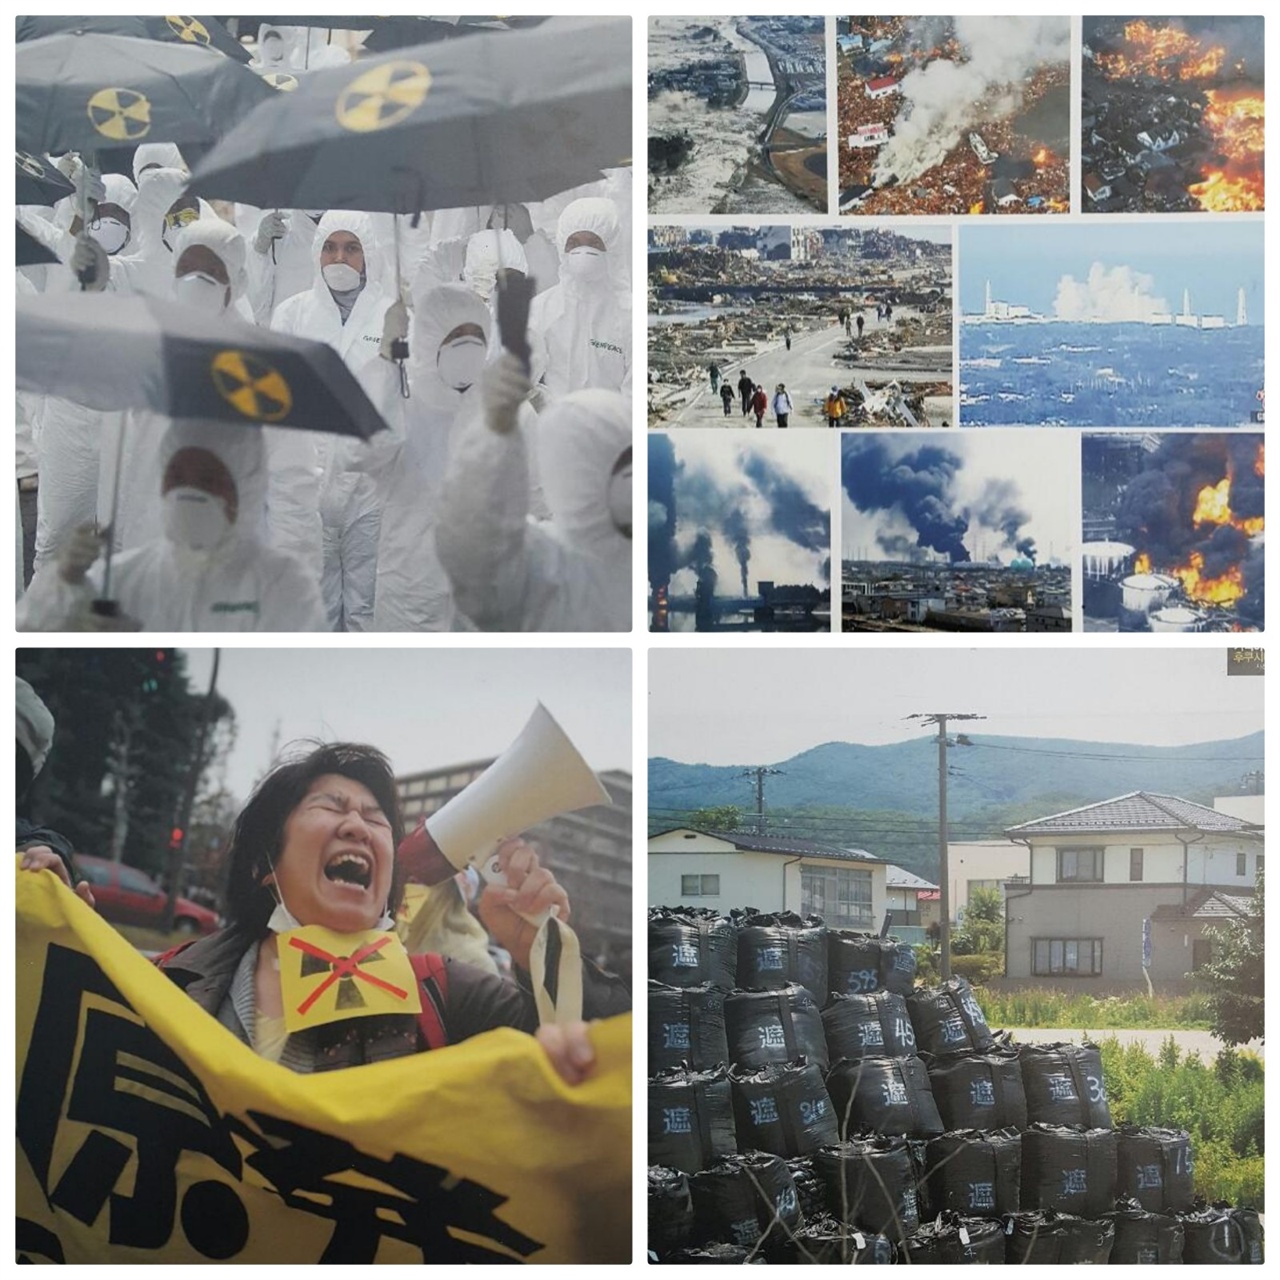 방사능은 국경을 넘는다(좌,위)  2011년 3월11일 후쿠시마(우, 위)
사고 2년, 도쿄에서 열린 핵 발전 반대시위(좌, 아래)  난처해진 일본 정부(우, 아래)